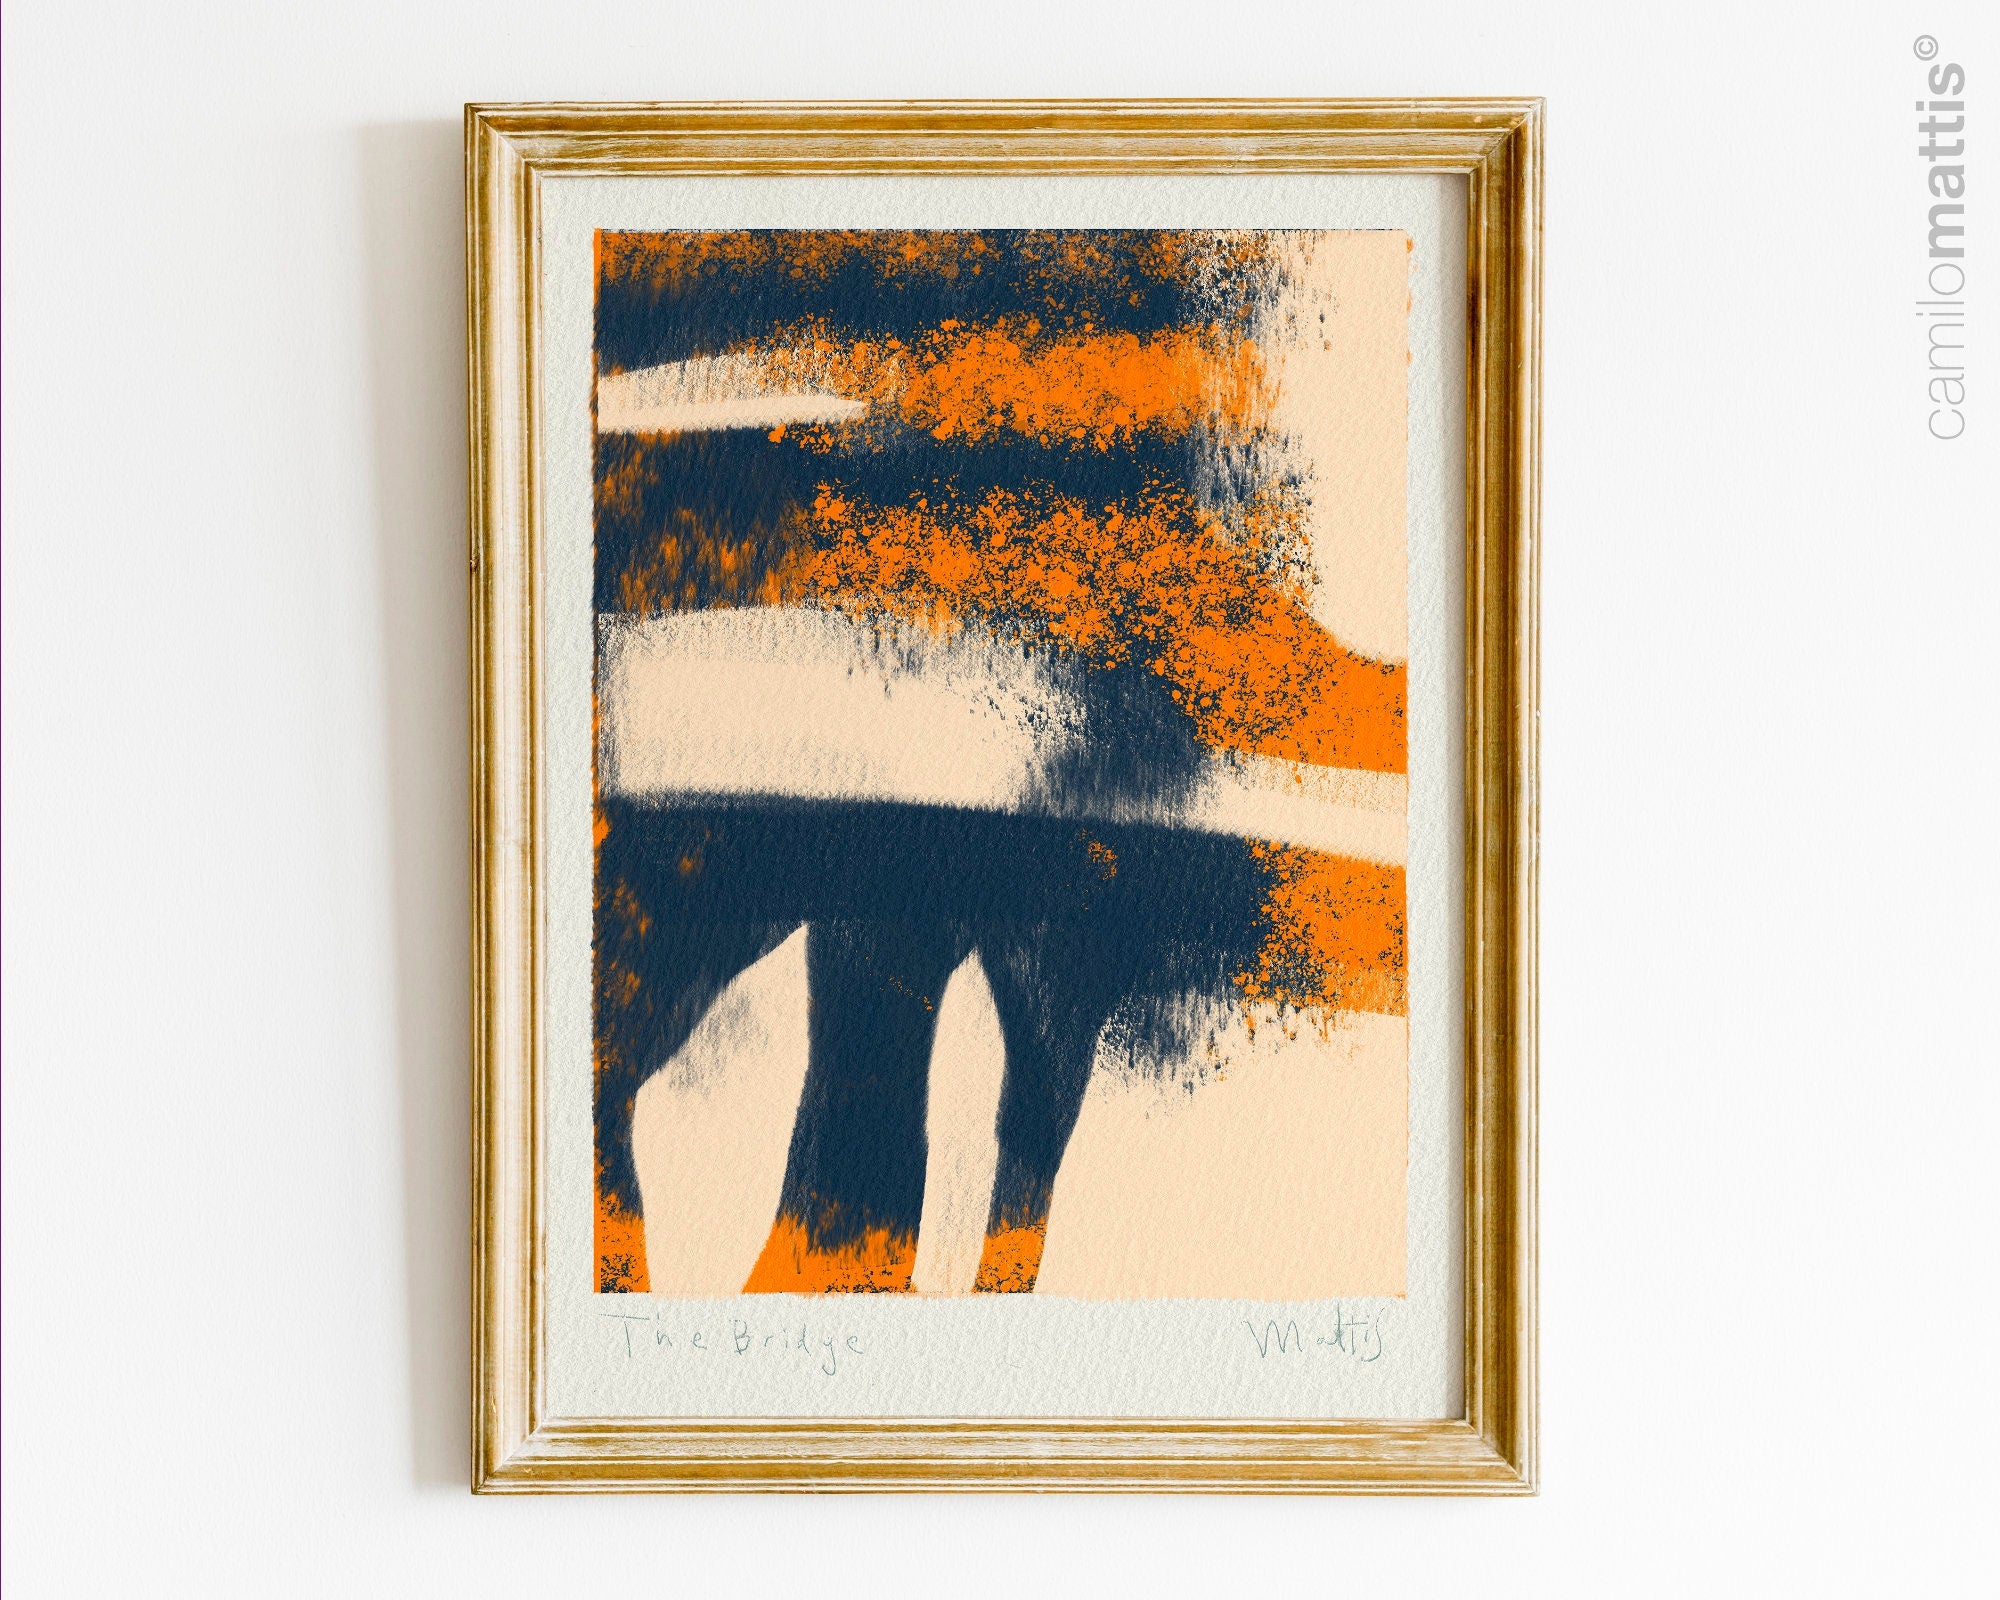 Póster de decoración minimalista boho en tonos naranja y azul, inspirado en la ciudad de Nueva York.